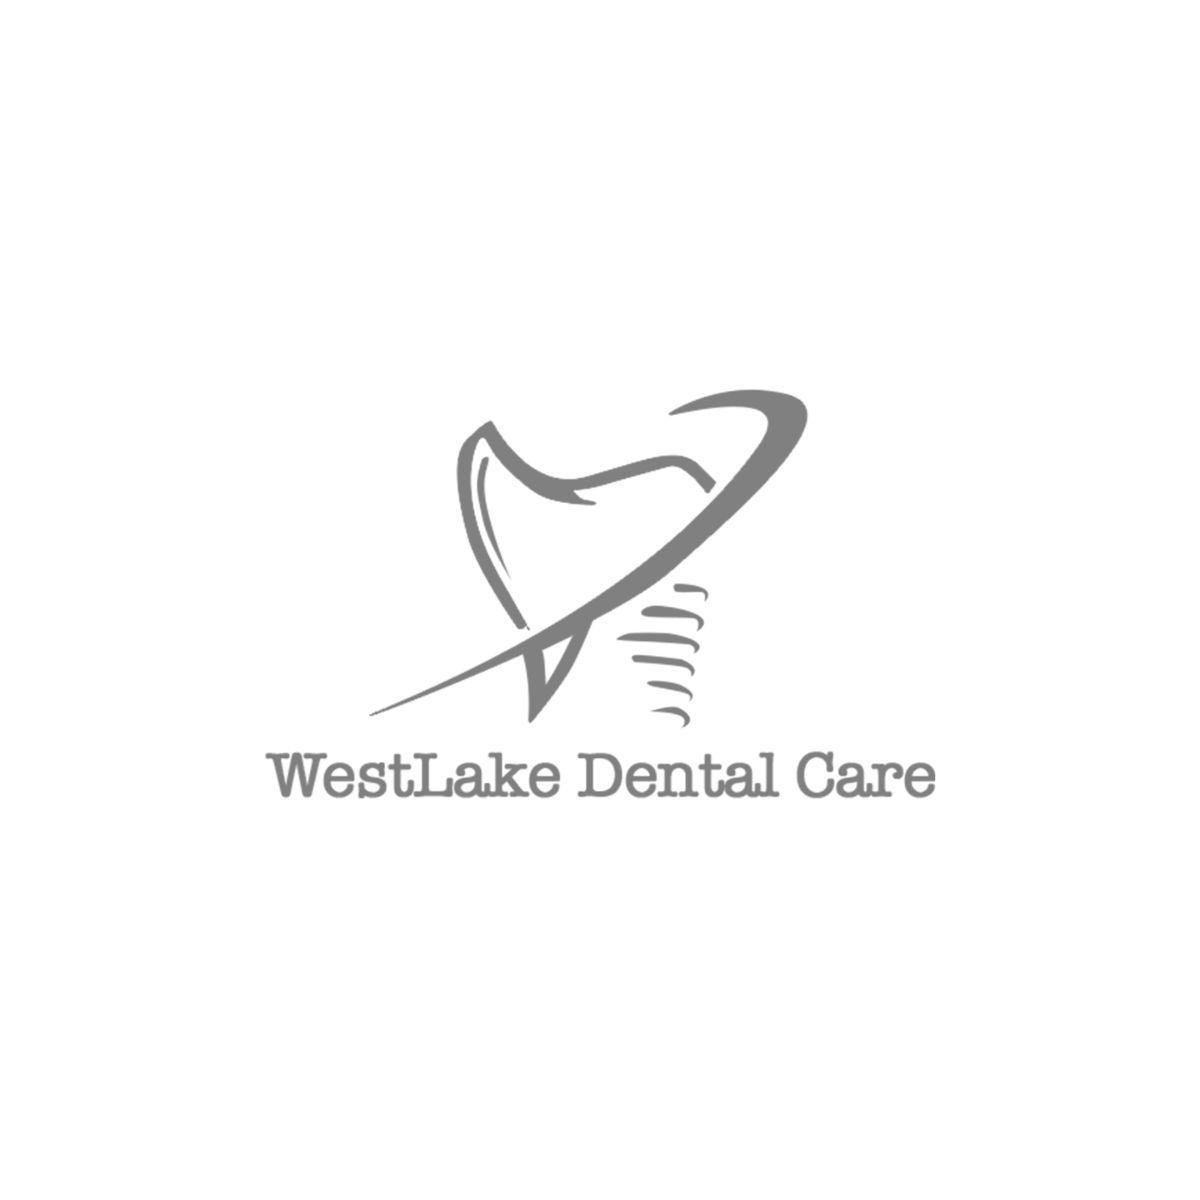 WestLake Dental Care logo 